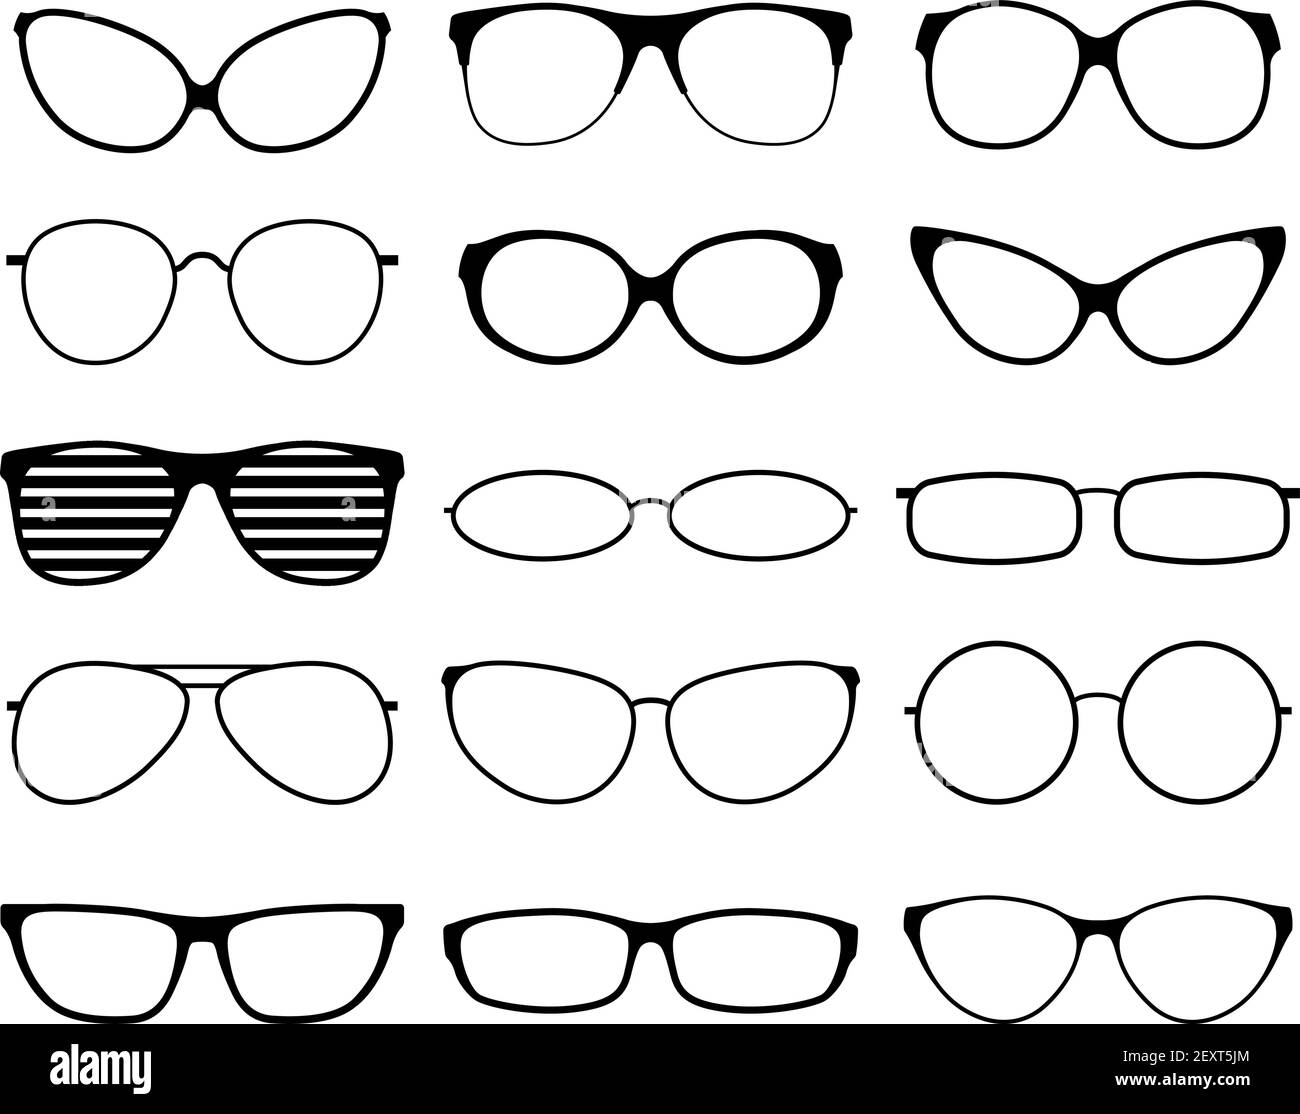 Lunettes silhouettes. Montures de lunettes de soleil mode, lunettes noires.  Lunettes geek et hipster. Homme femme lunettes. Ensemble d'icônes  vectorielles de la lentille de la vue, illustration du bord des lunettes  Image